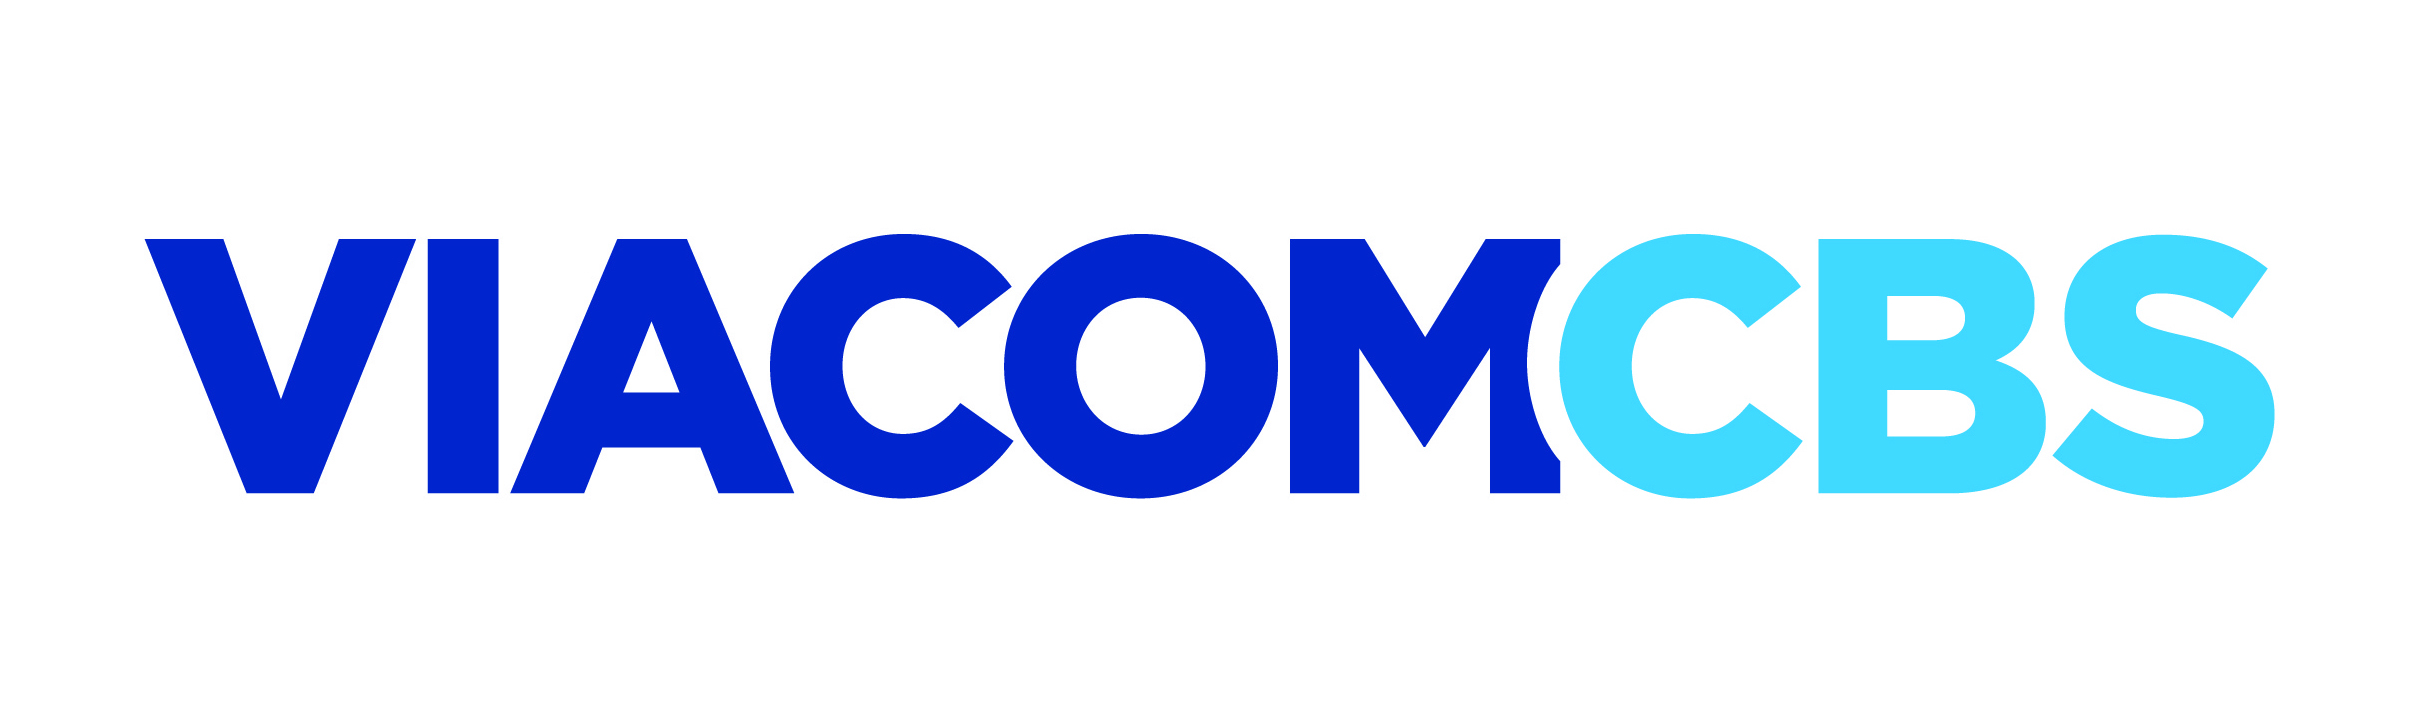 ViacomCBS InSites logo